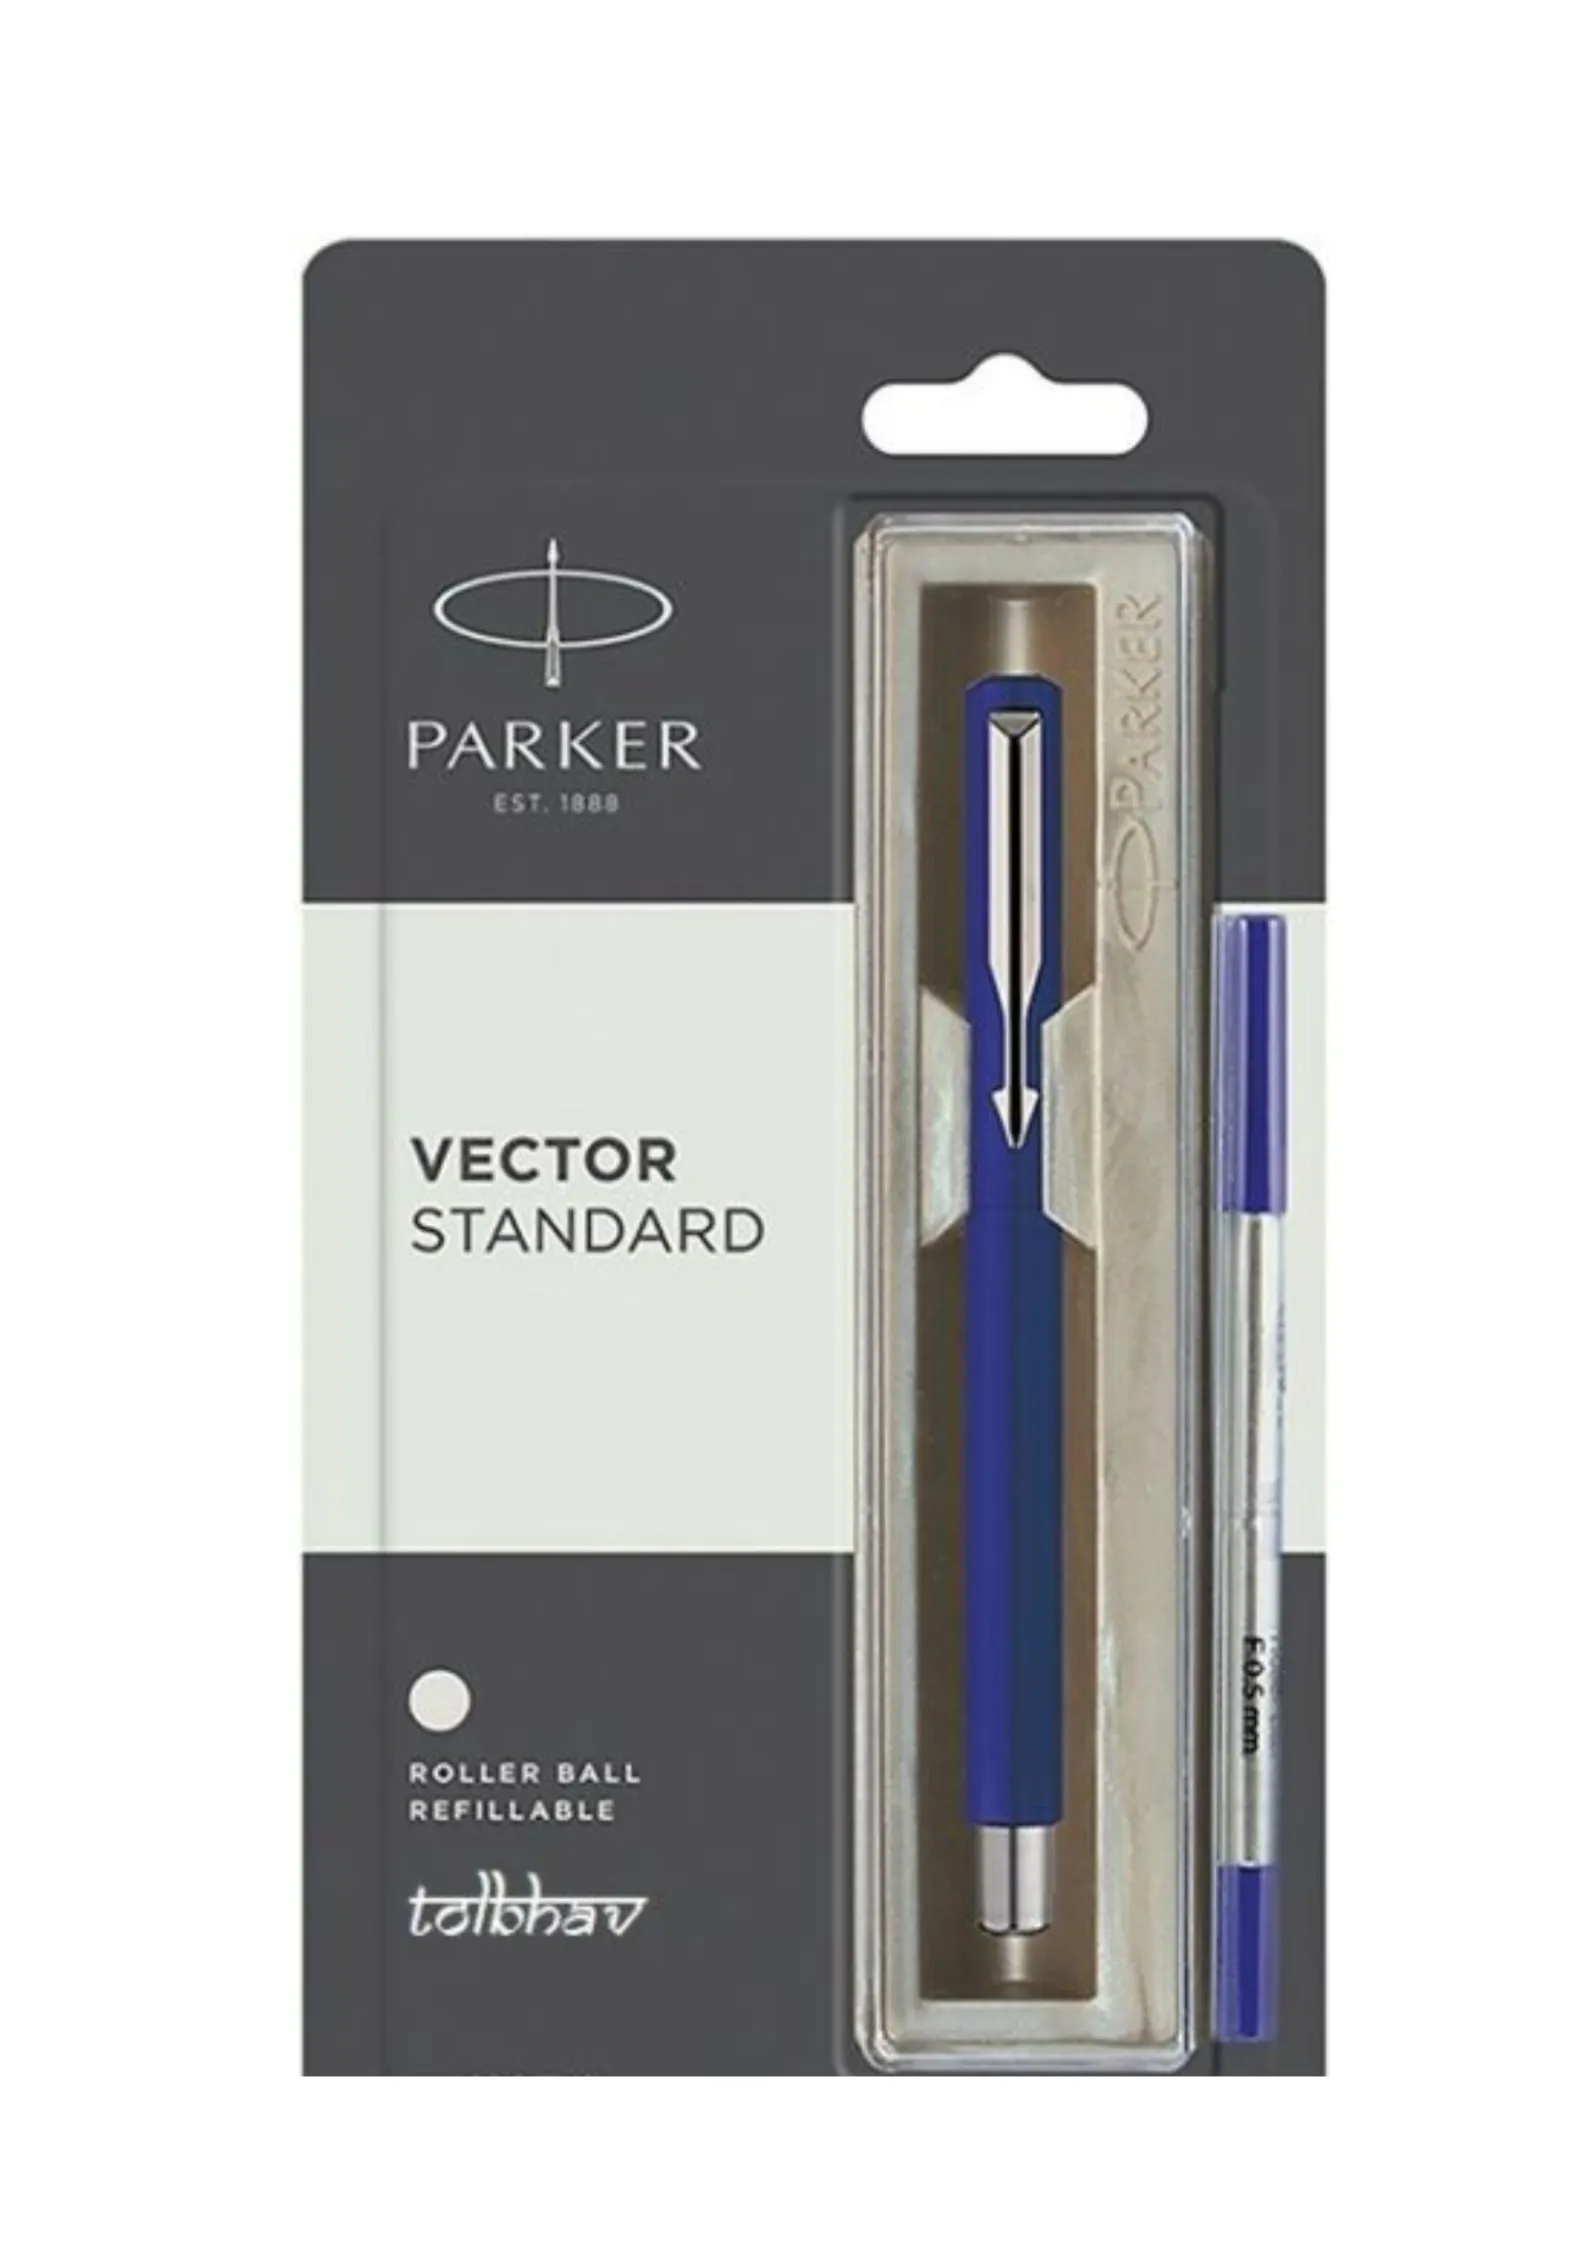 Parker Vector Standard Chrome Trim Roller Ball Pen (Pack of 1) Blue Body